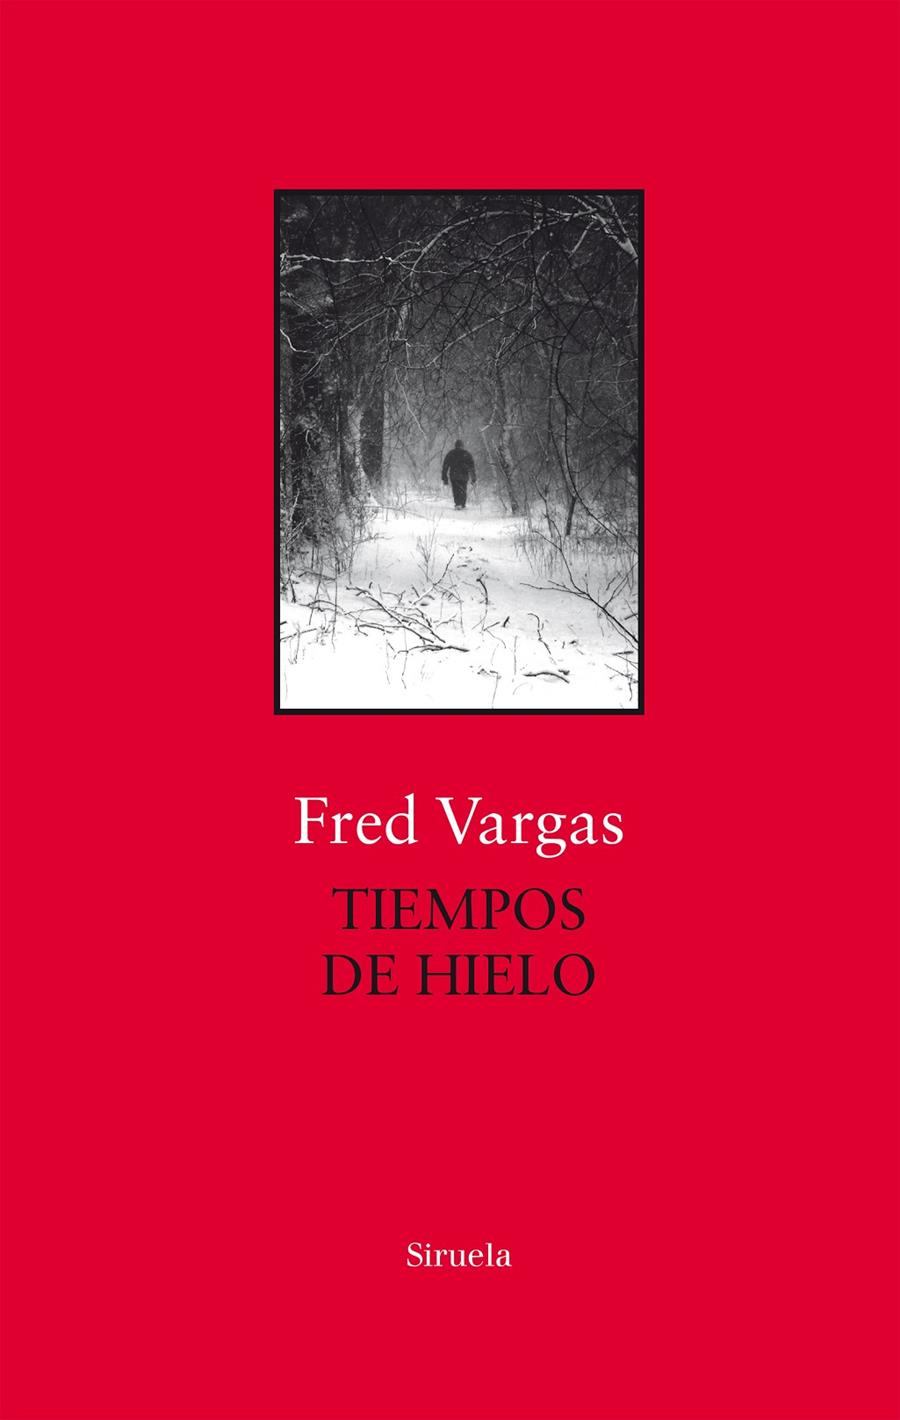 Tiempos de hielo | Vargas, Fred | Cooperativa autogestionària